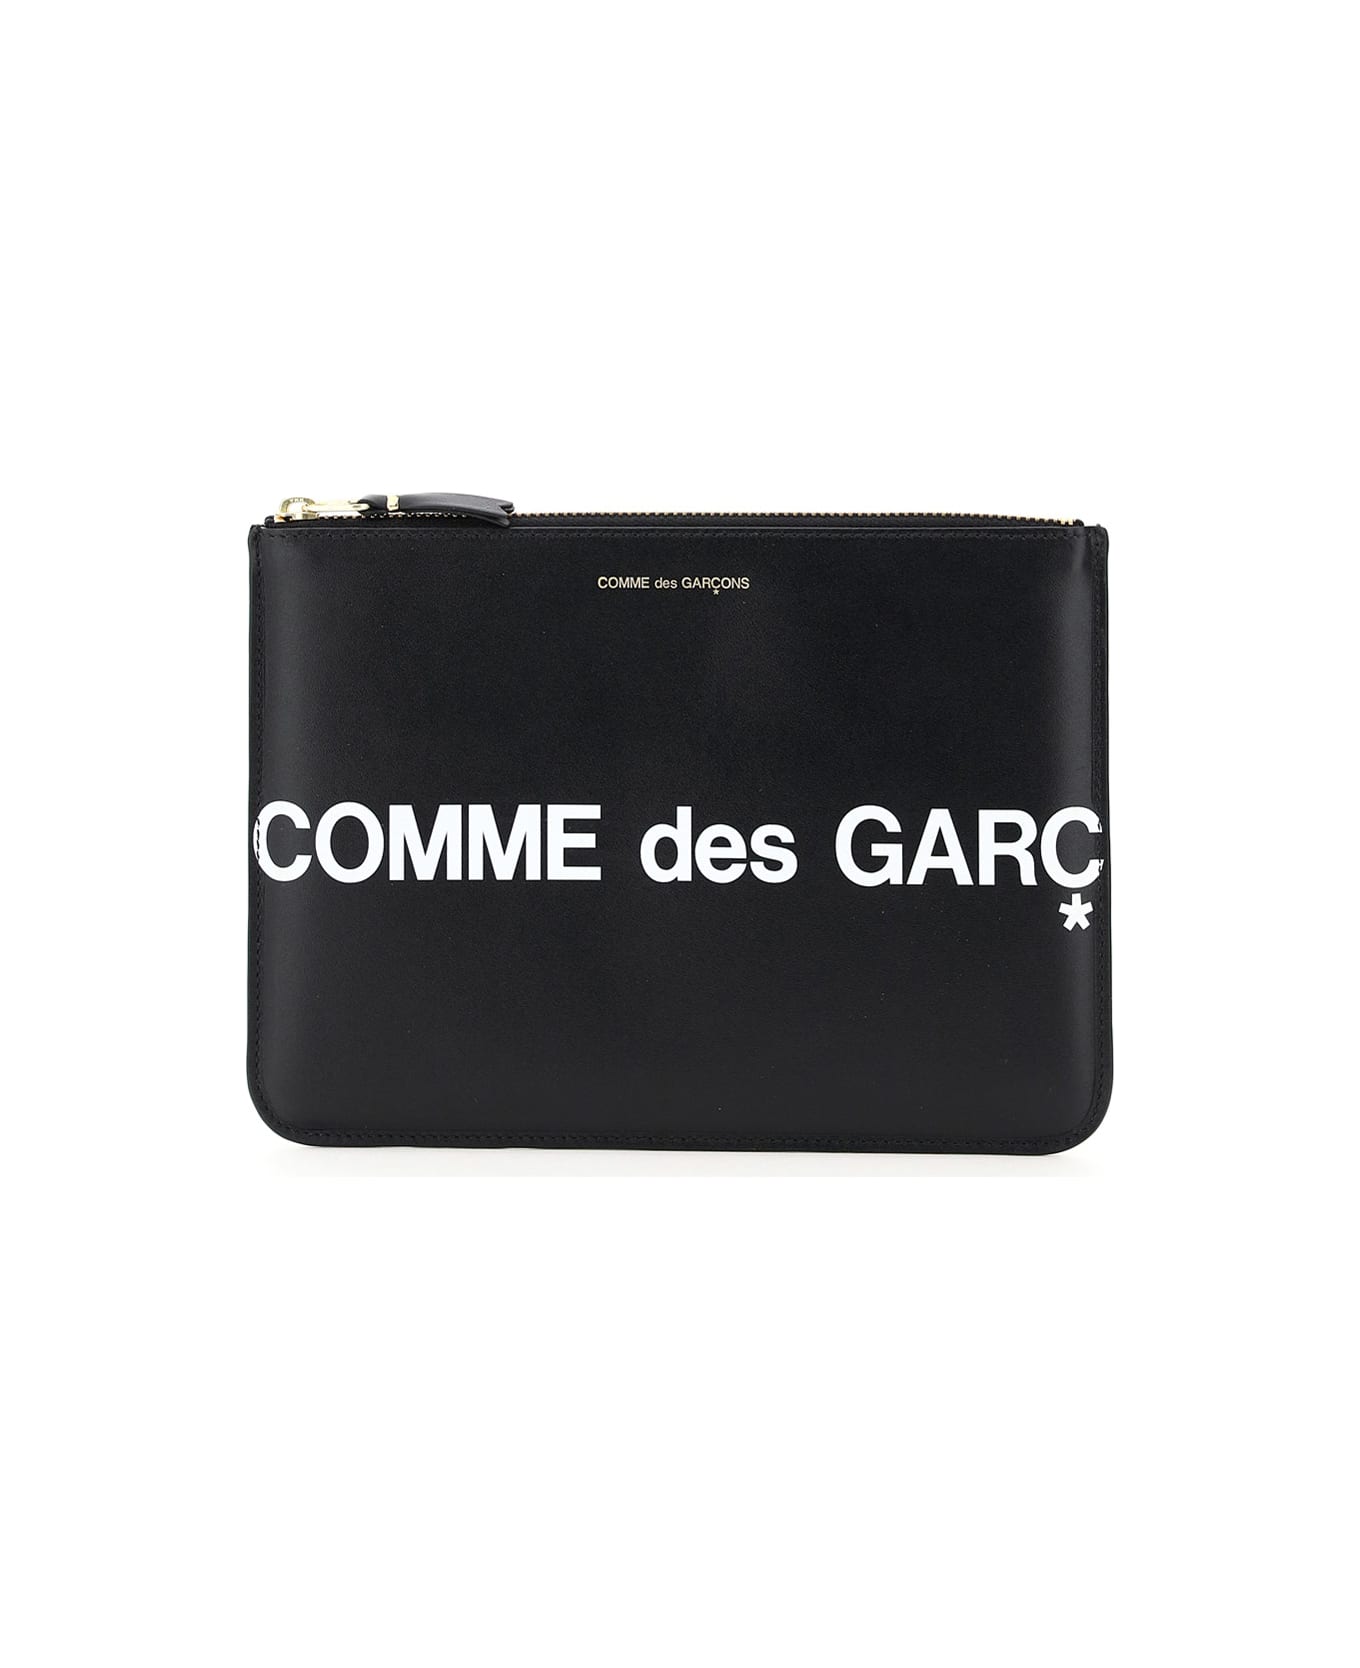 Comme des Garçons Wallet Leather Pouch With Logo - Black